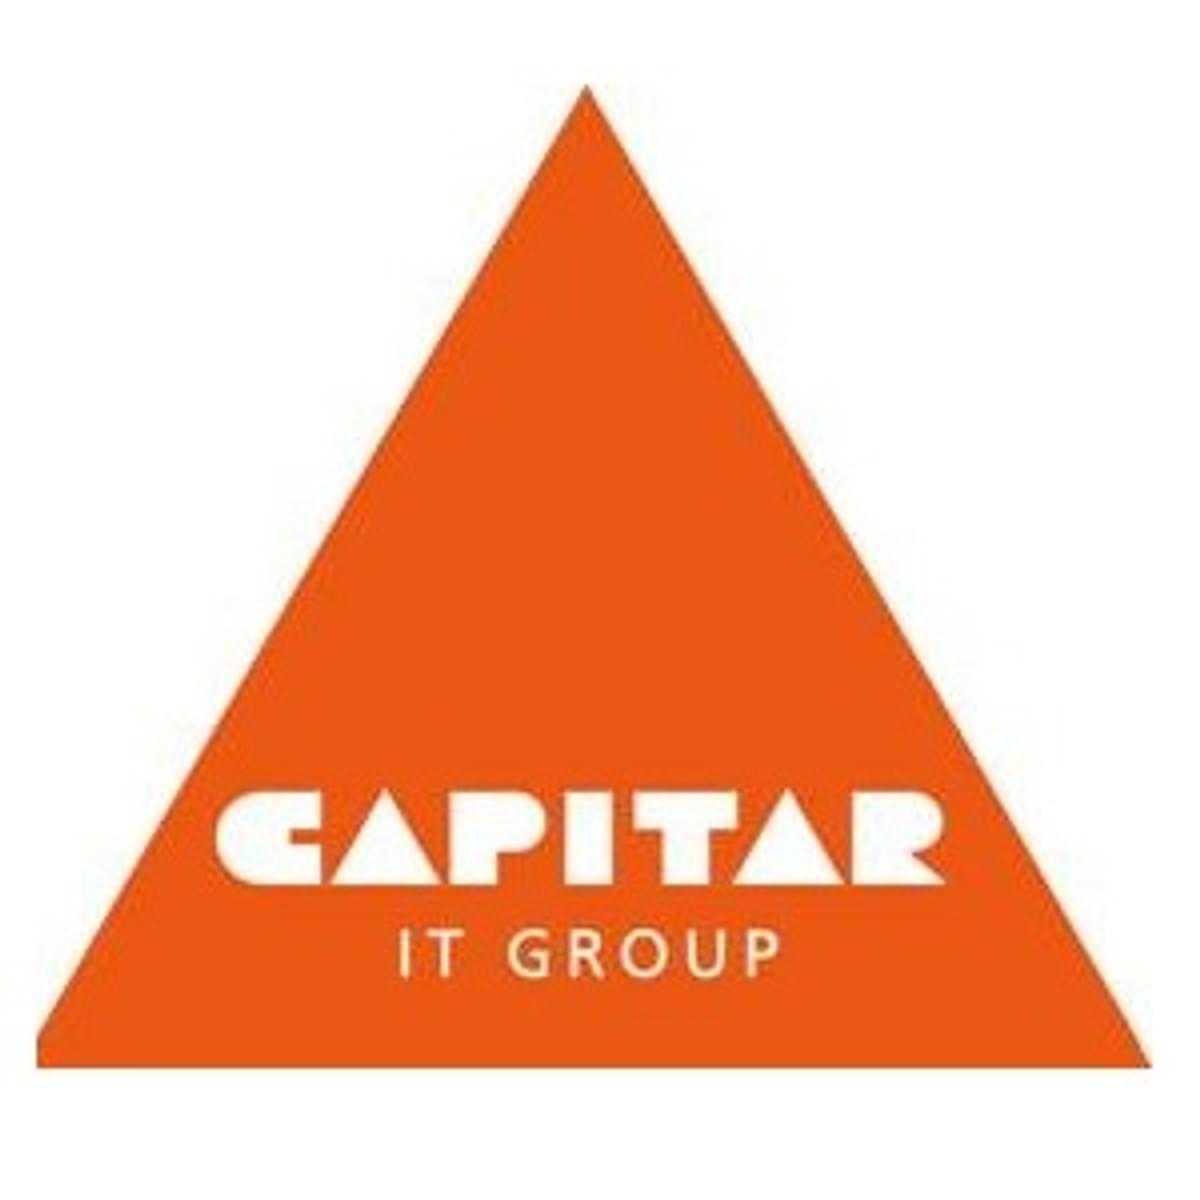 Capitar IT Group lanceert SaaS-dienst image